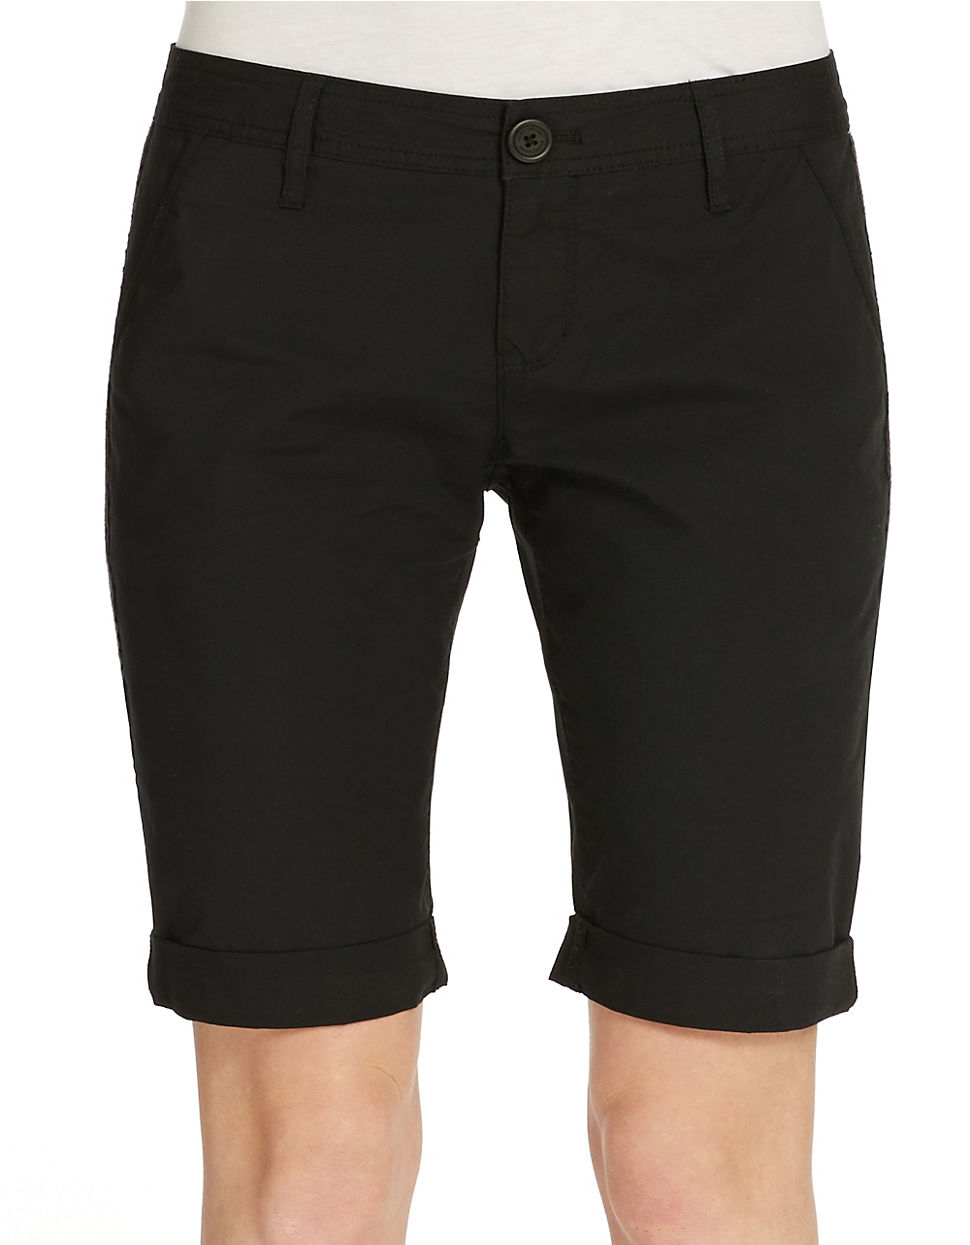 Dkny Stretch Bermuda Shorts in Black | Lyst